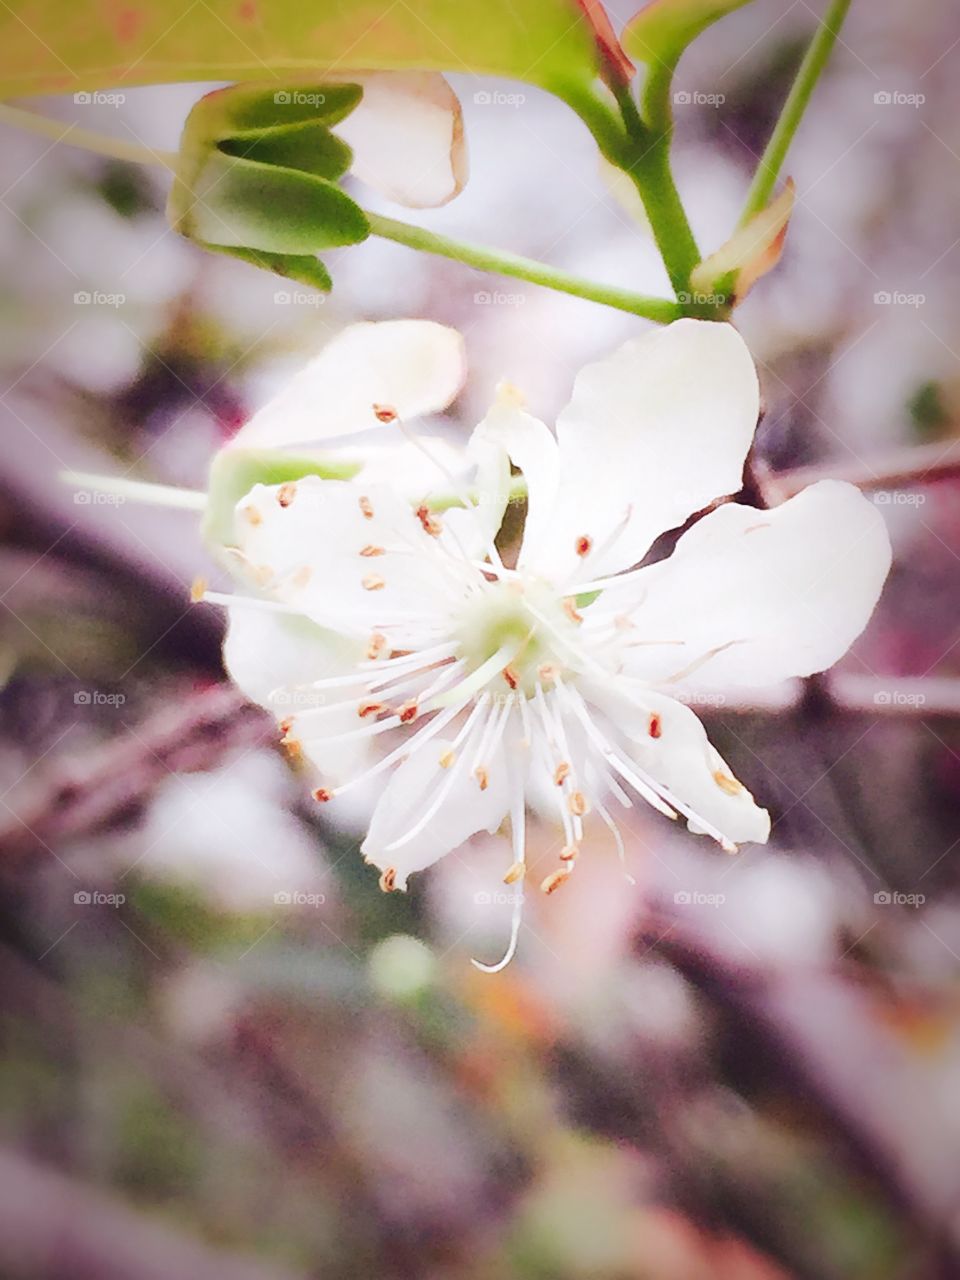 The plum blossom close up 